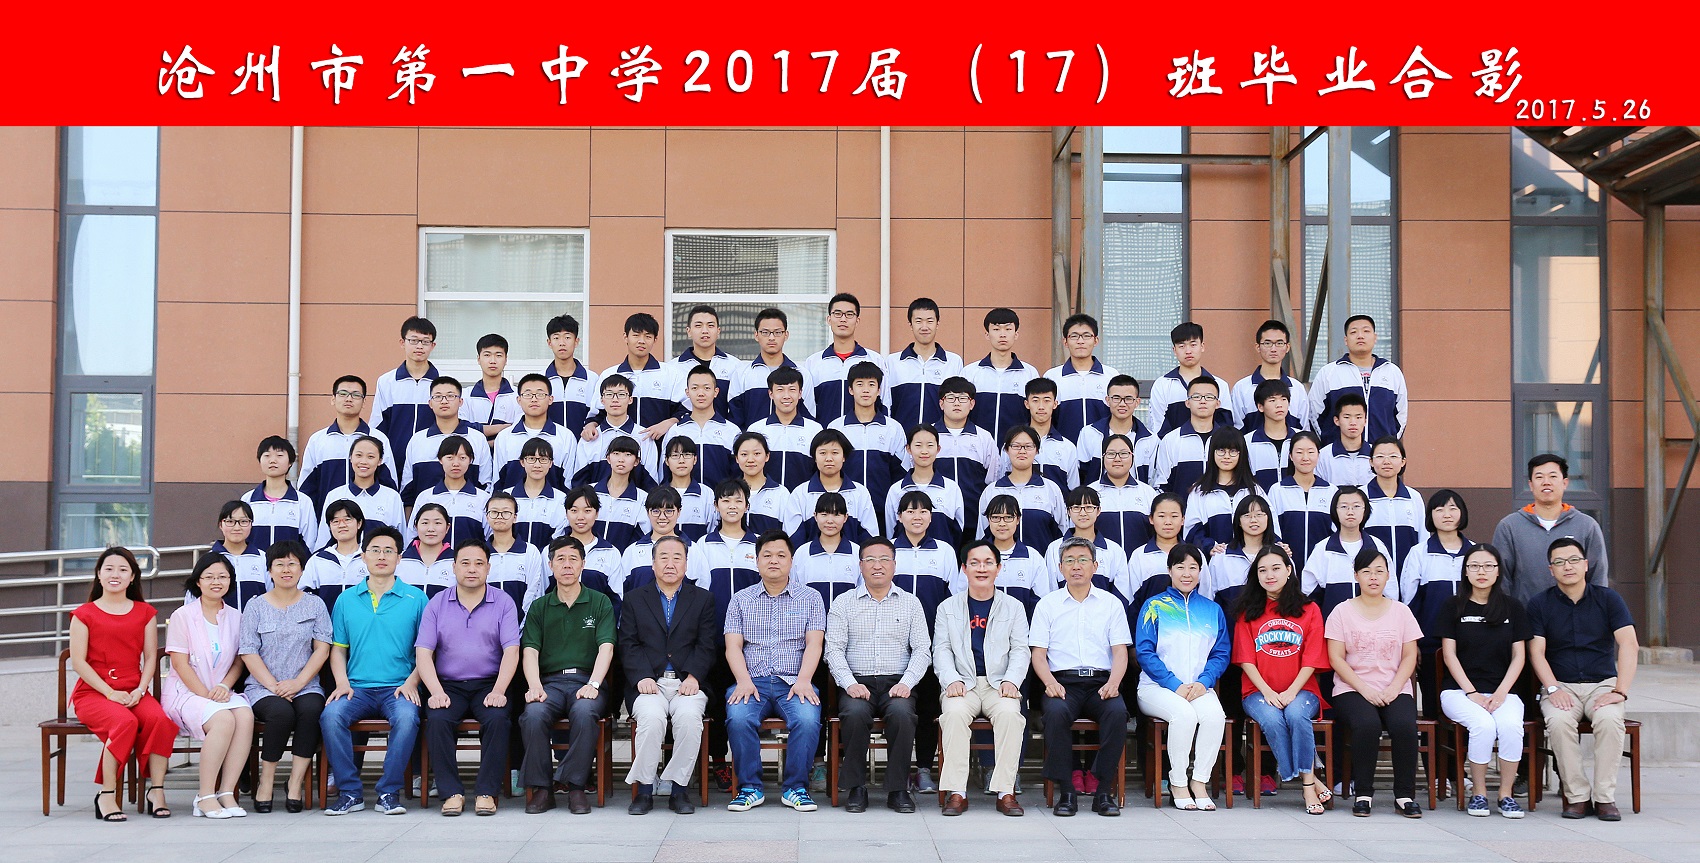 进贤县第二初级中学-进贤县教育公共服务平台